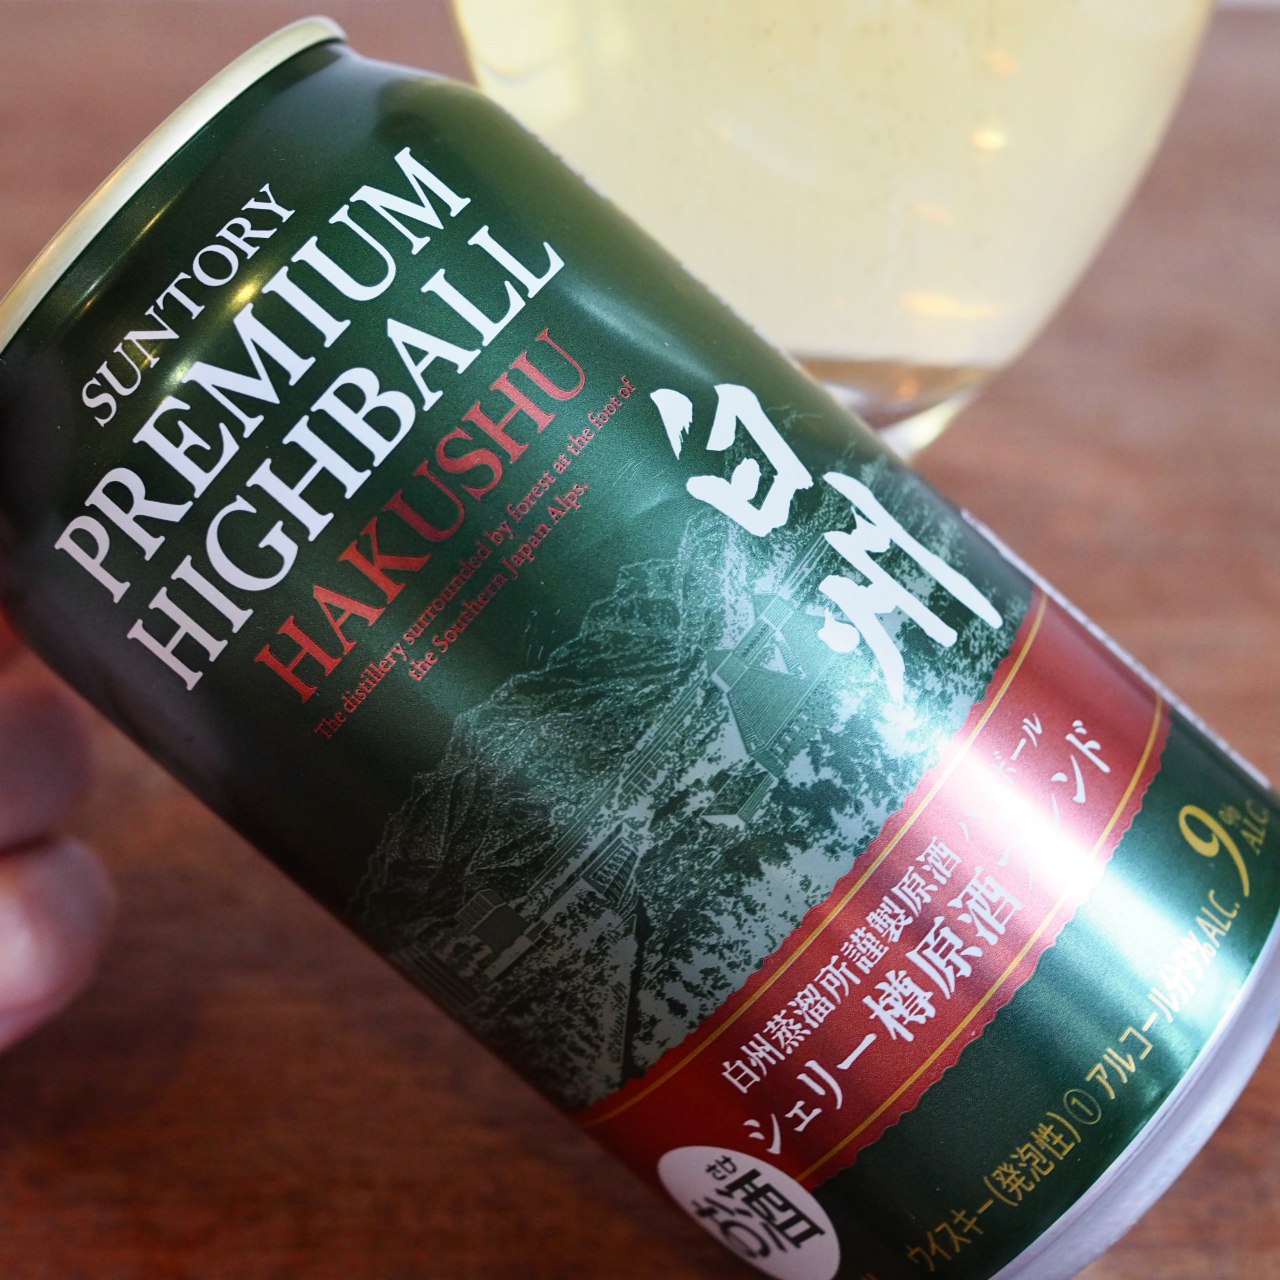 Highball Review: Suntory Premium Highball Hakushu Sherry Cask 